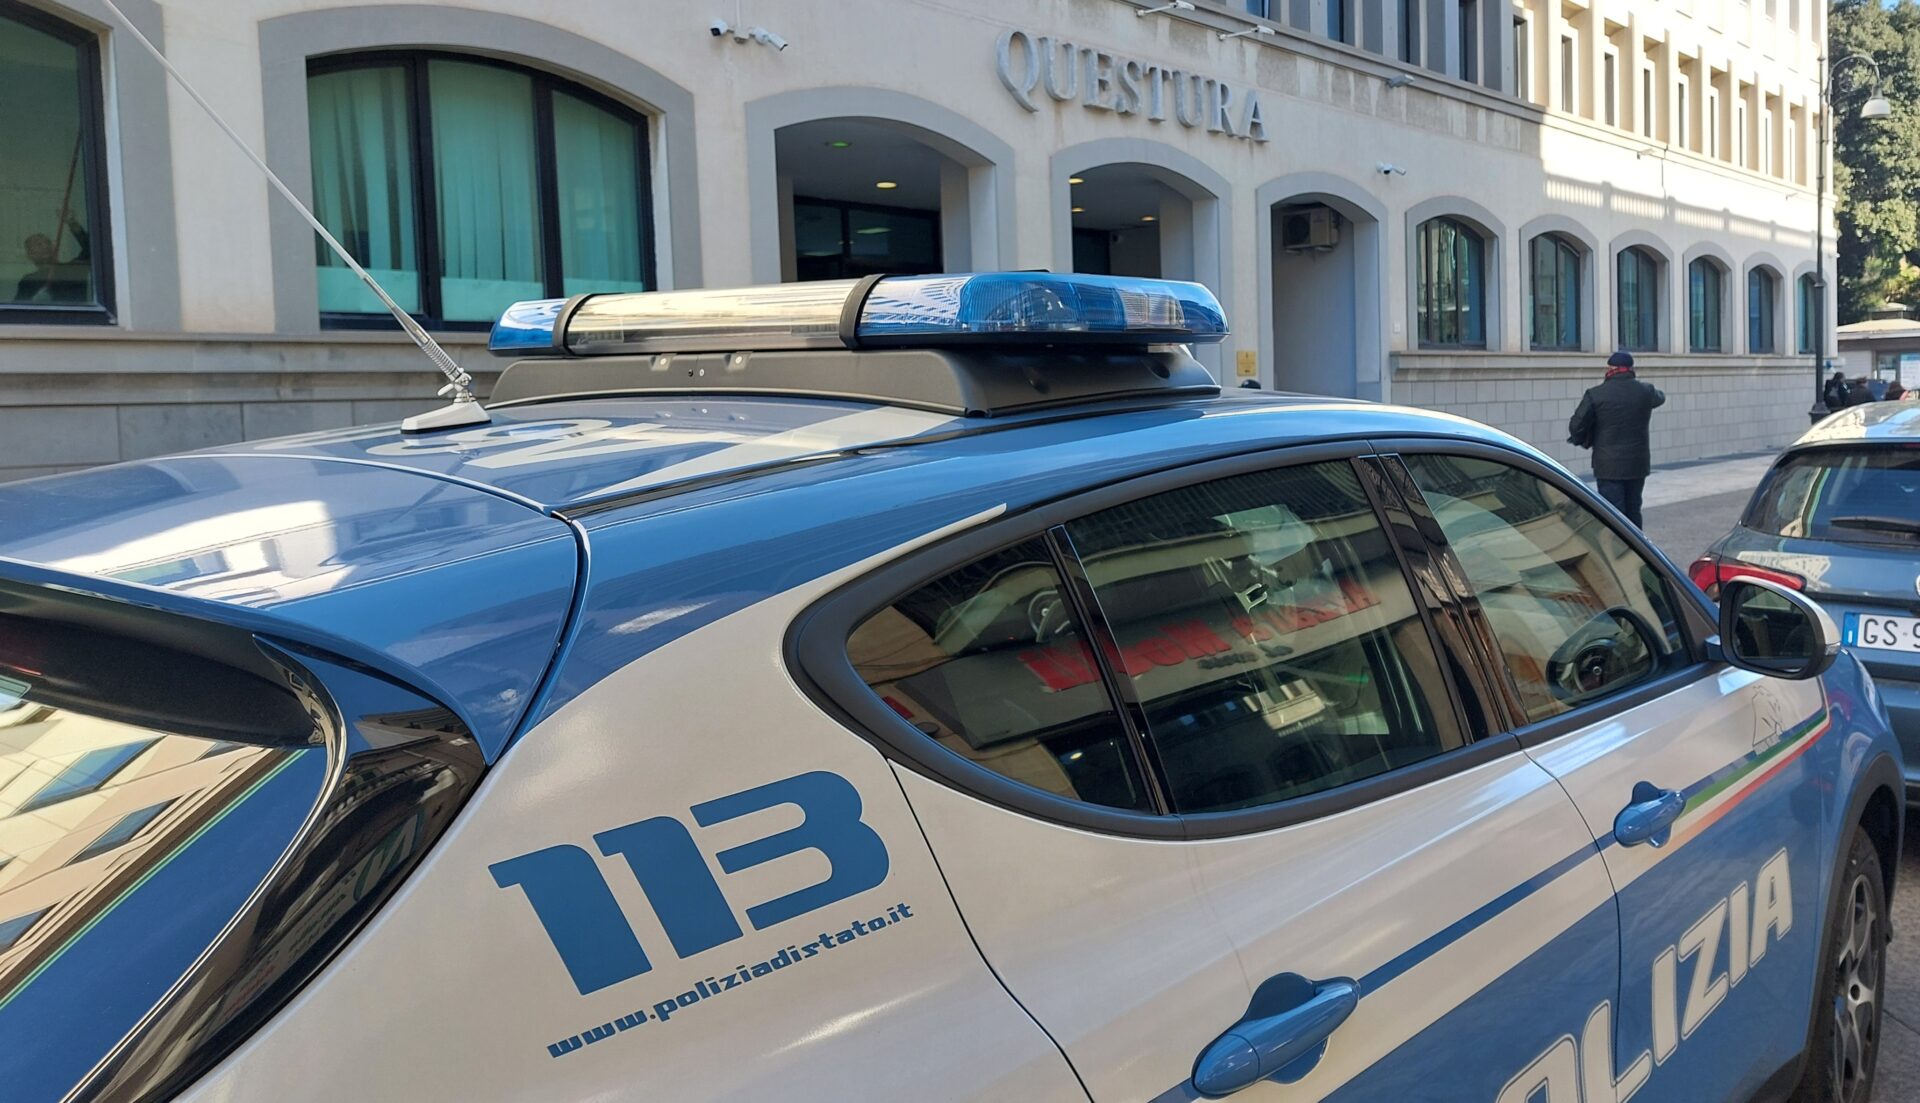 Focus ‘ndrangheta a Reggio, attenzionata la Villa comunale e piazza Zerbi: espulsi 9 extracomunitari irregolari